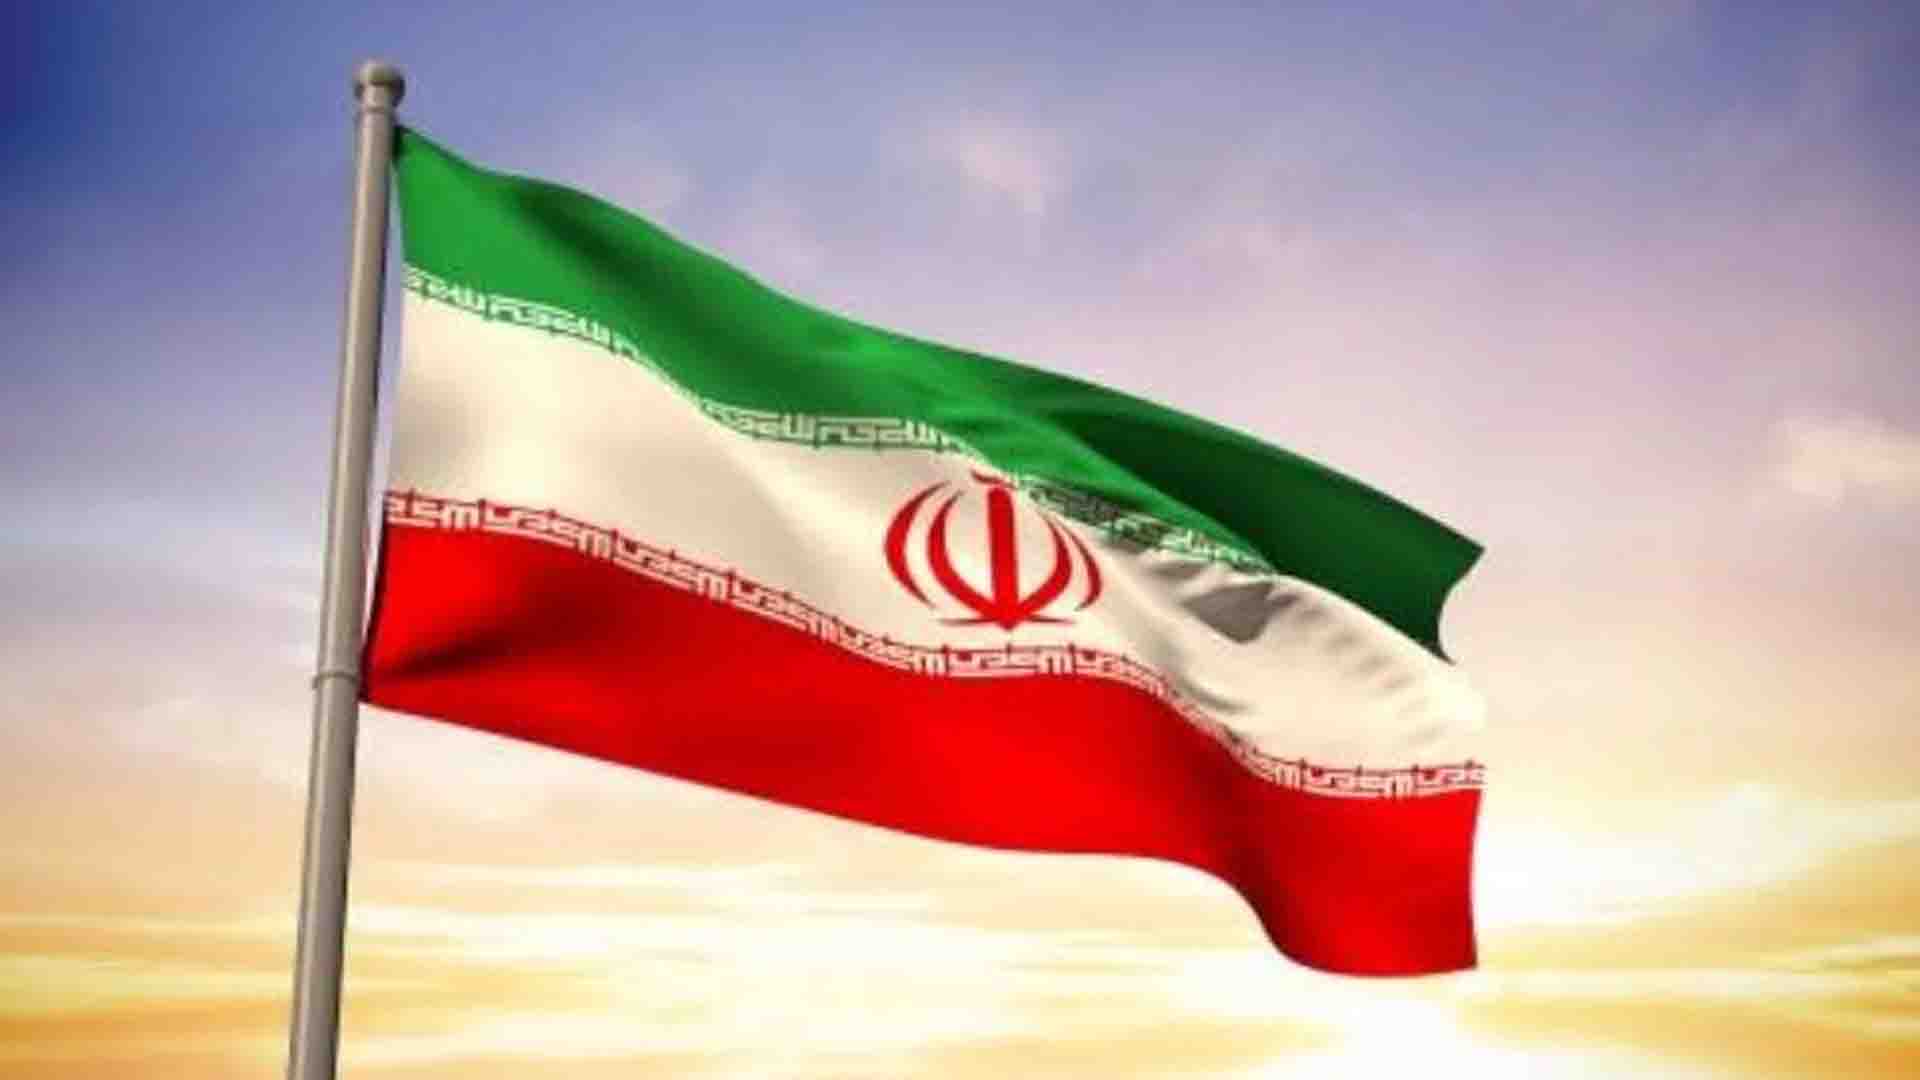 Falta de liberdades e deterioração econômica inflamam protestos no Irã